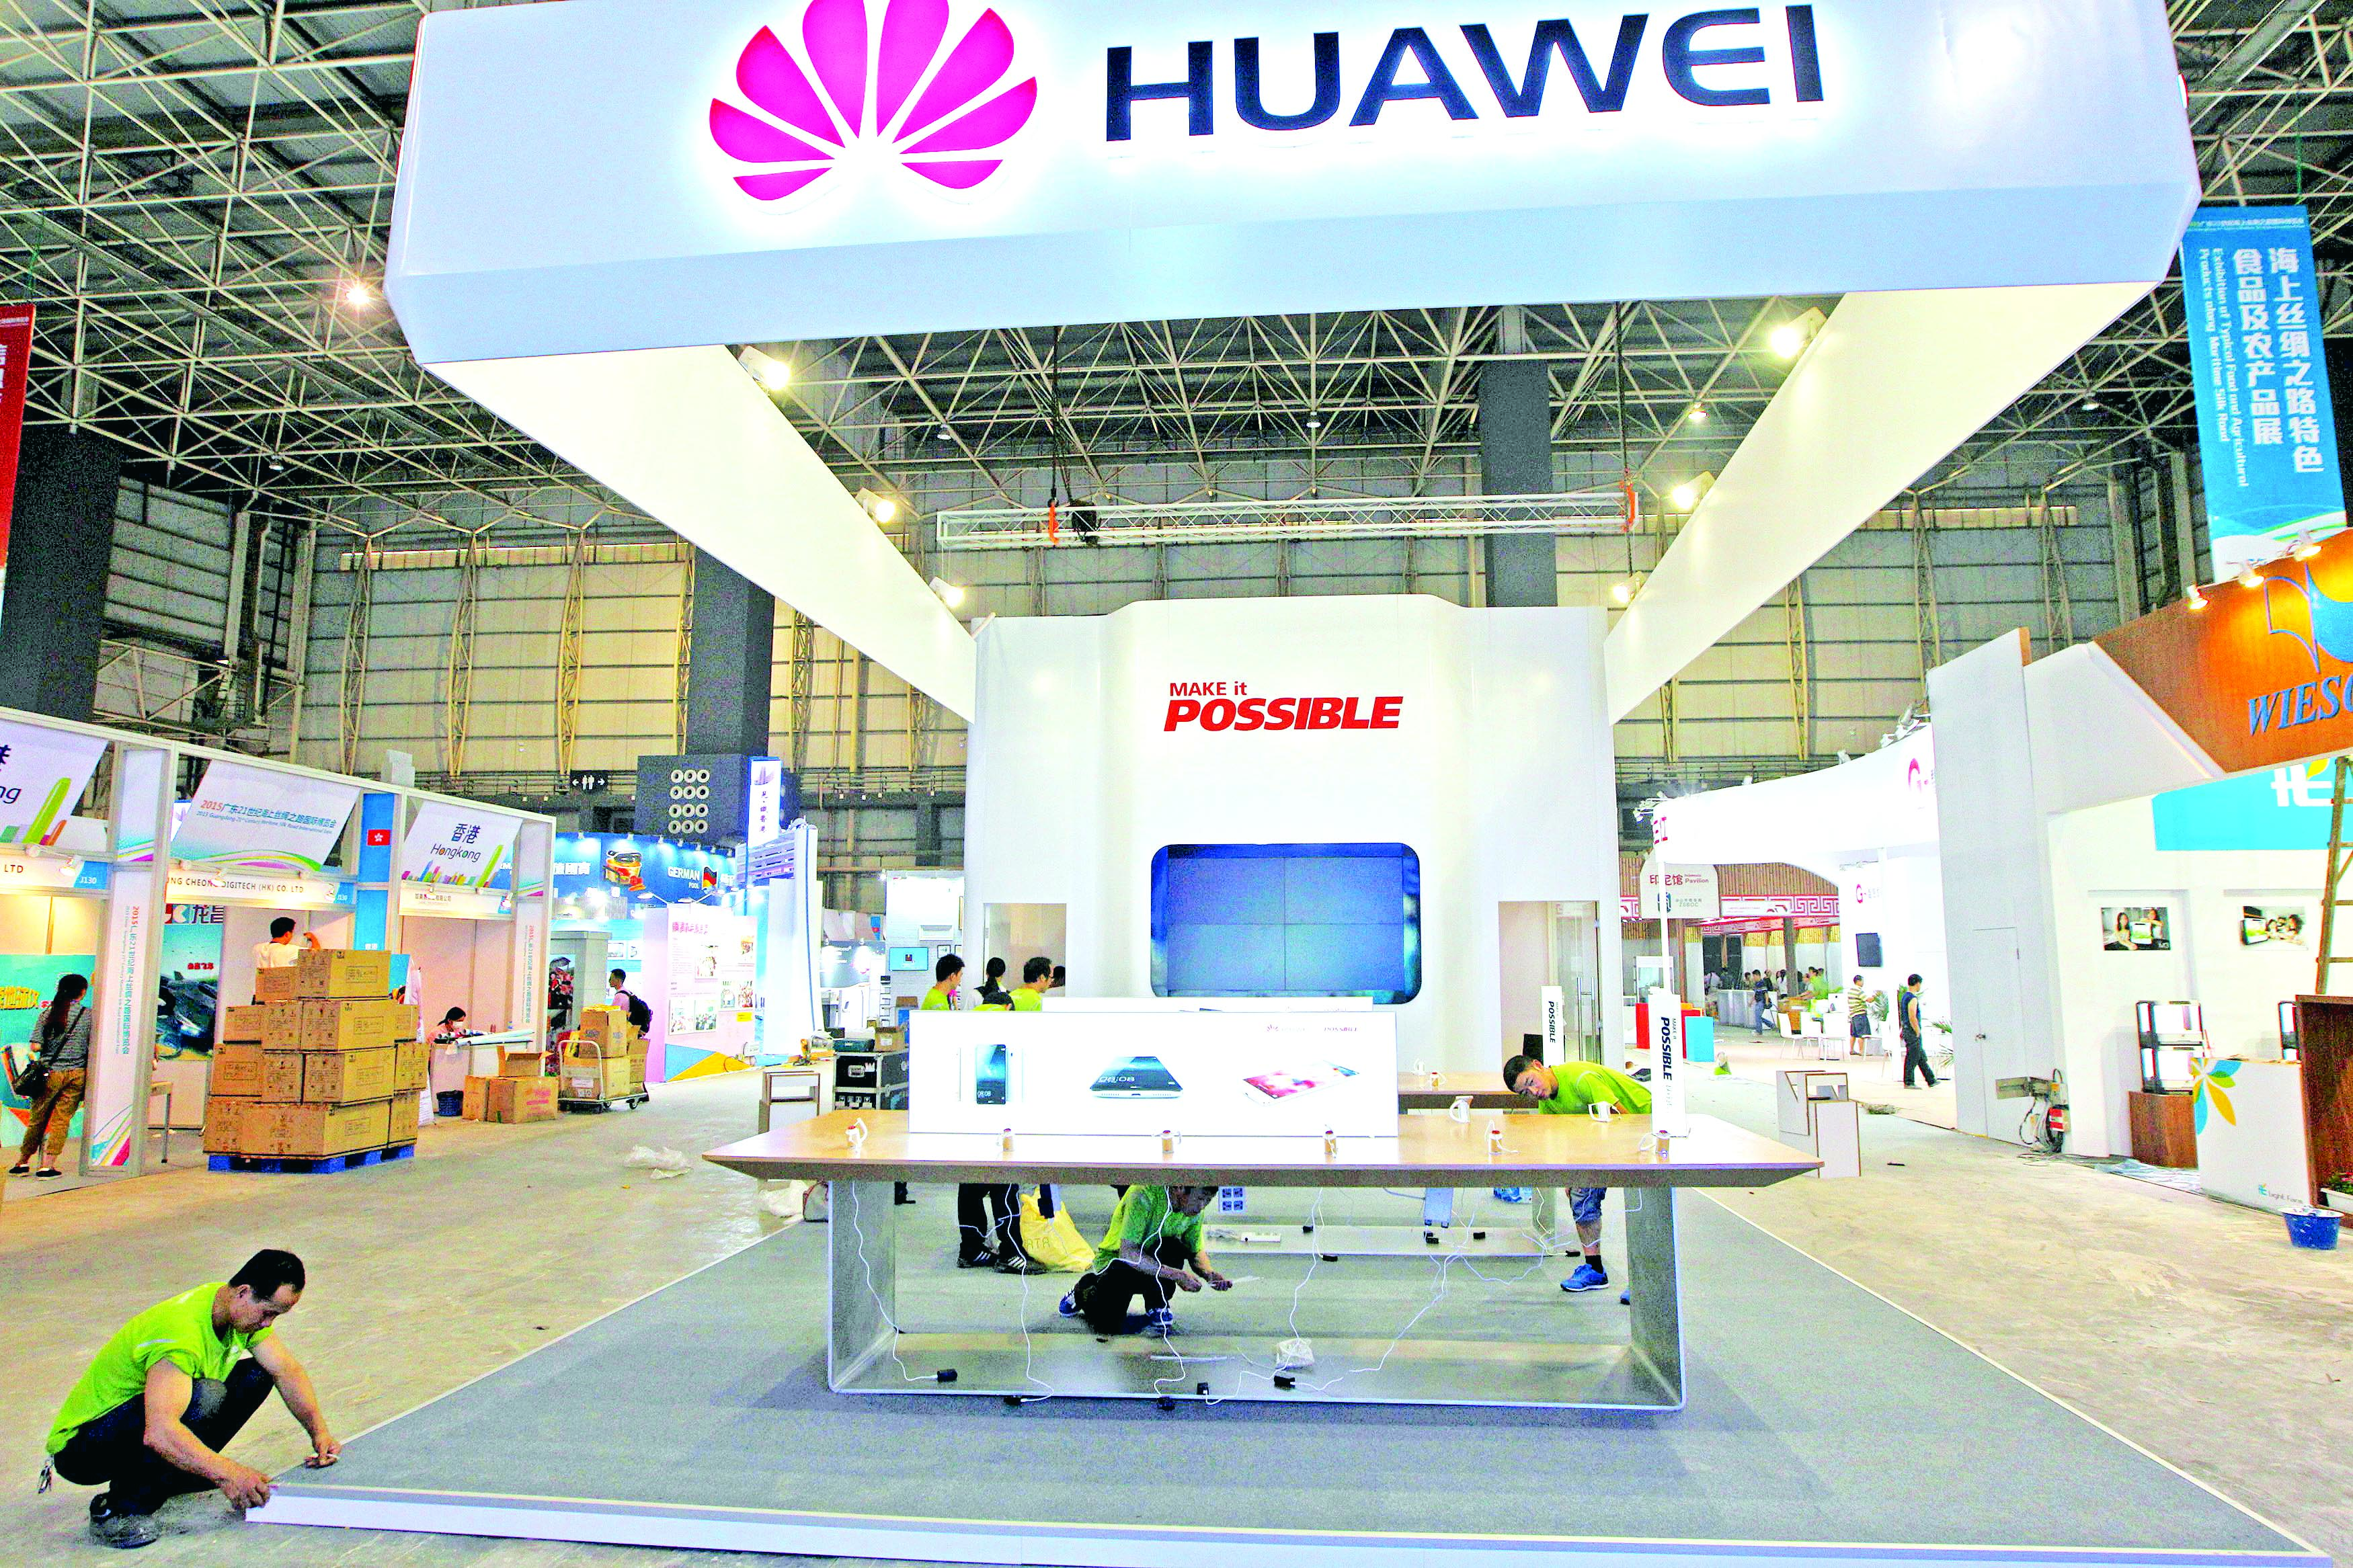 Clúster de TIC’s concreta un acuerdo con Huawei